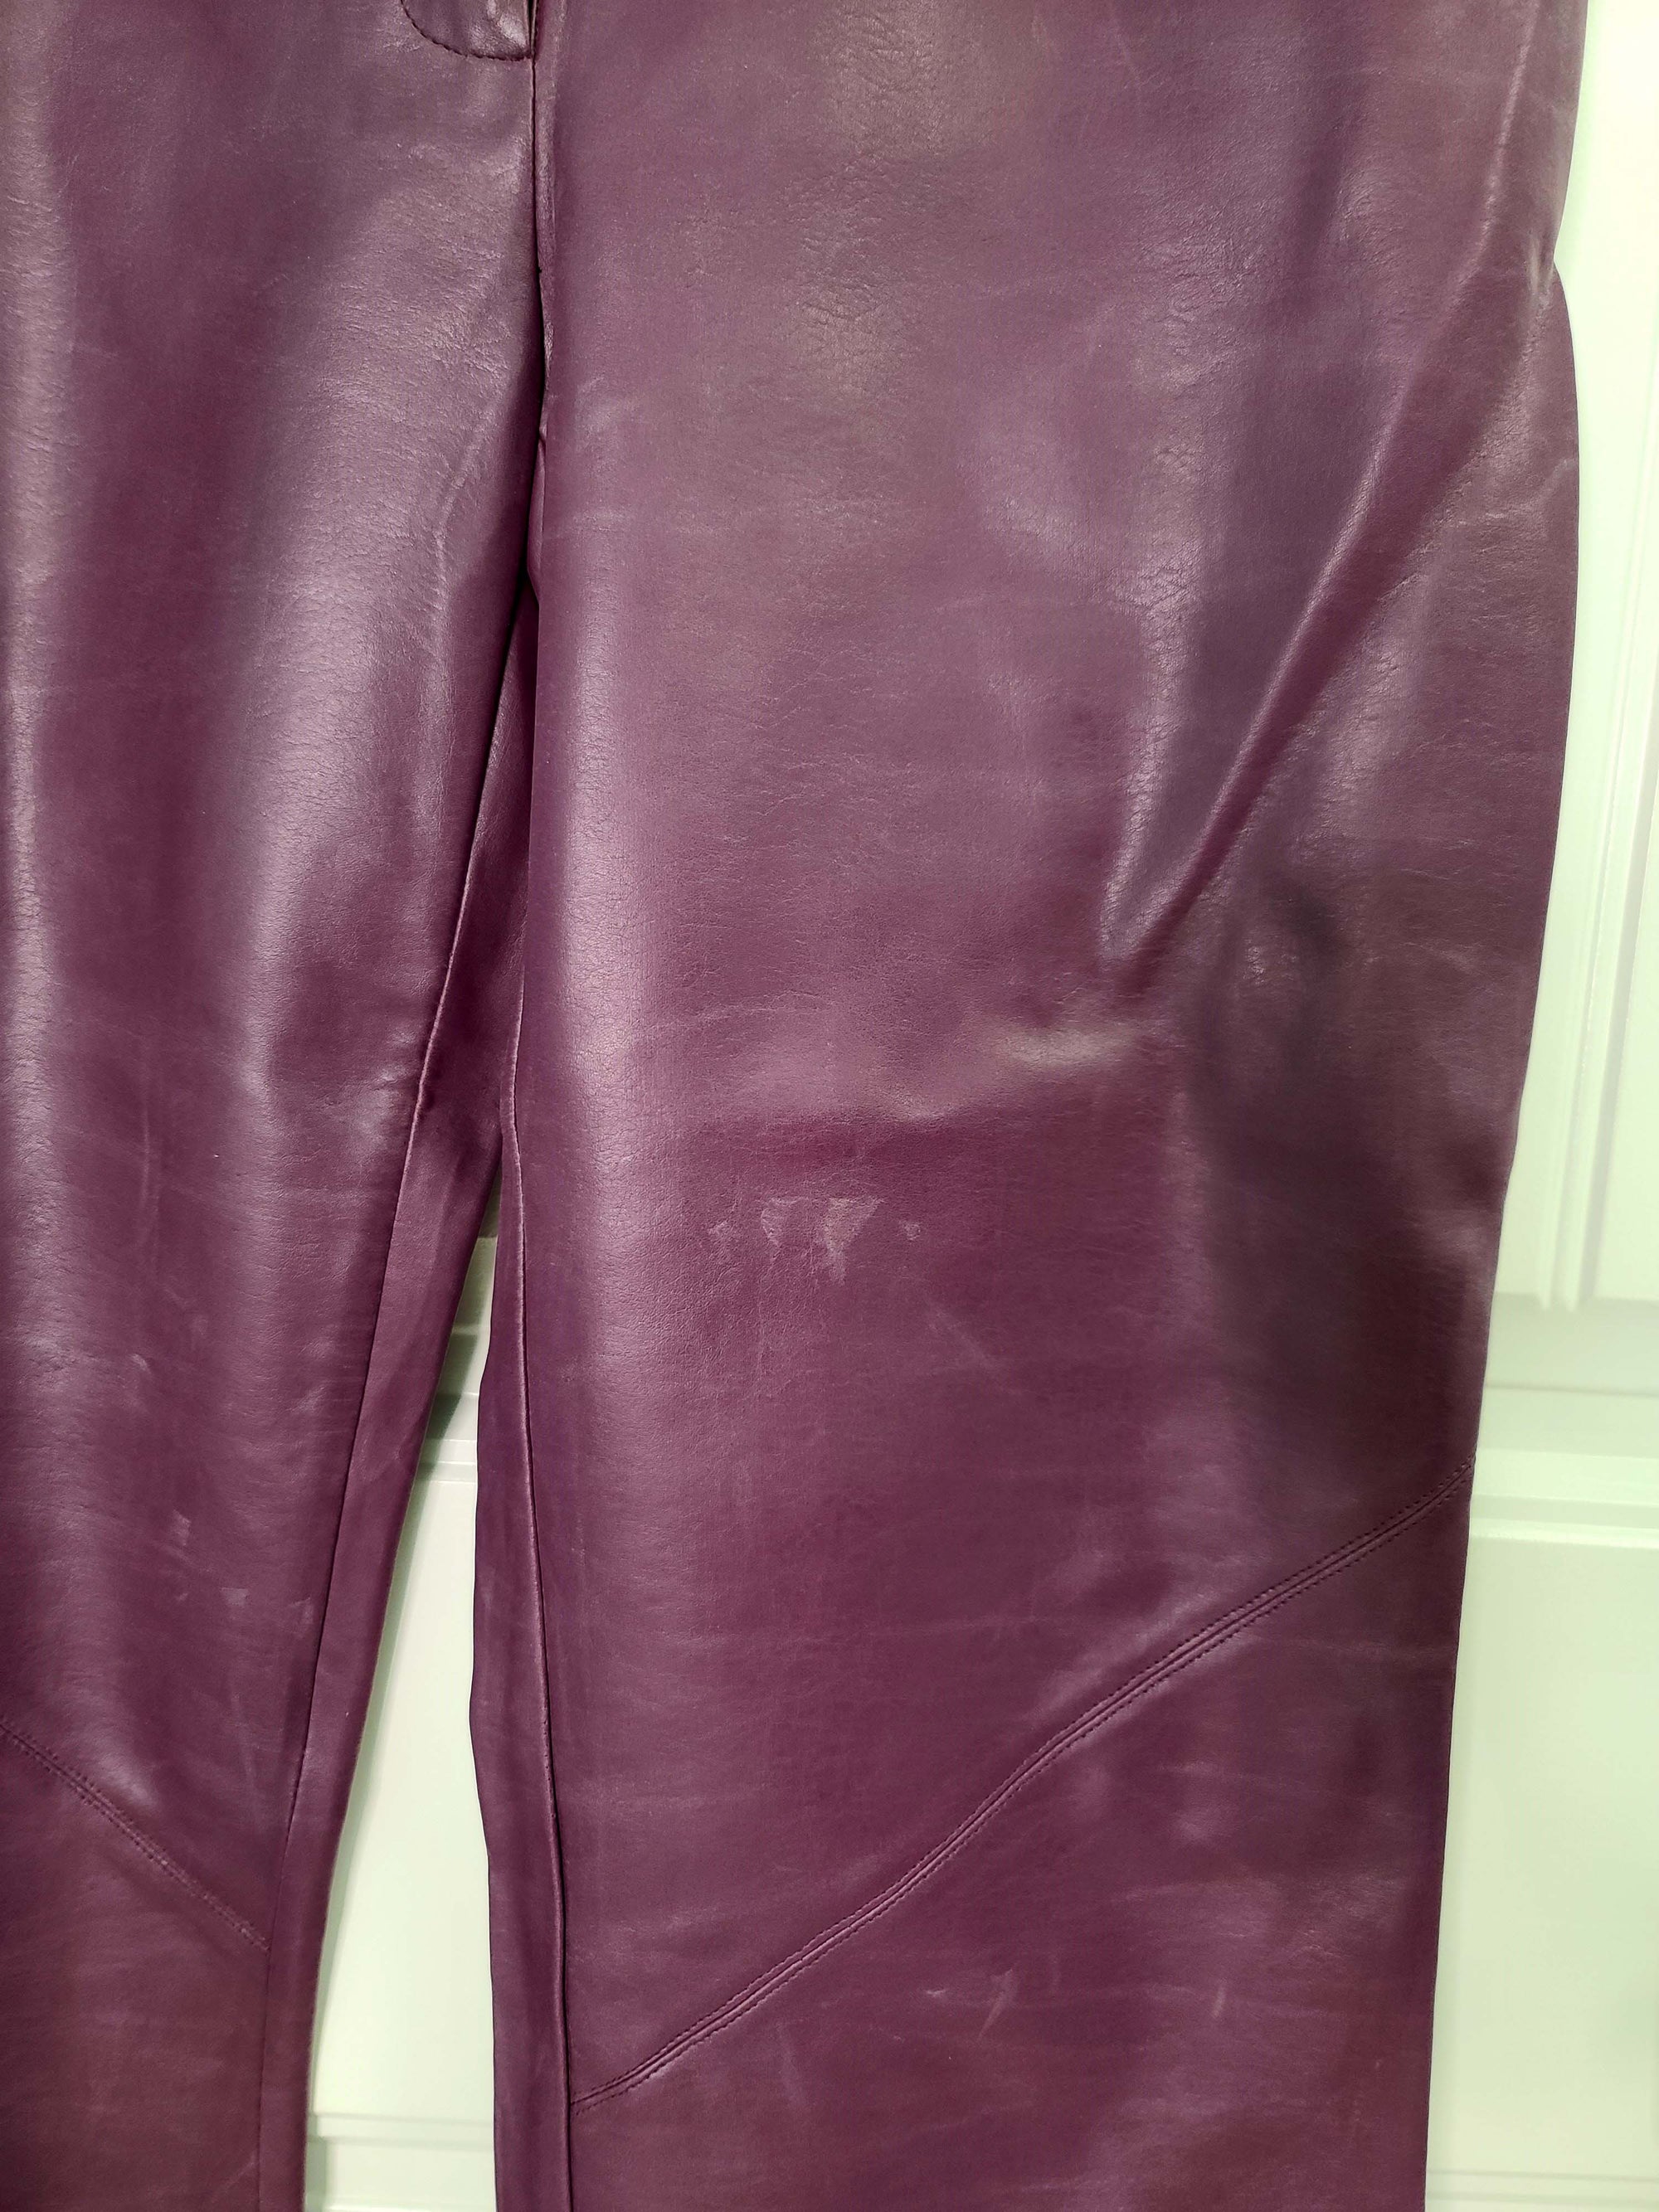 Purple Leather Pants (12)